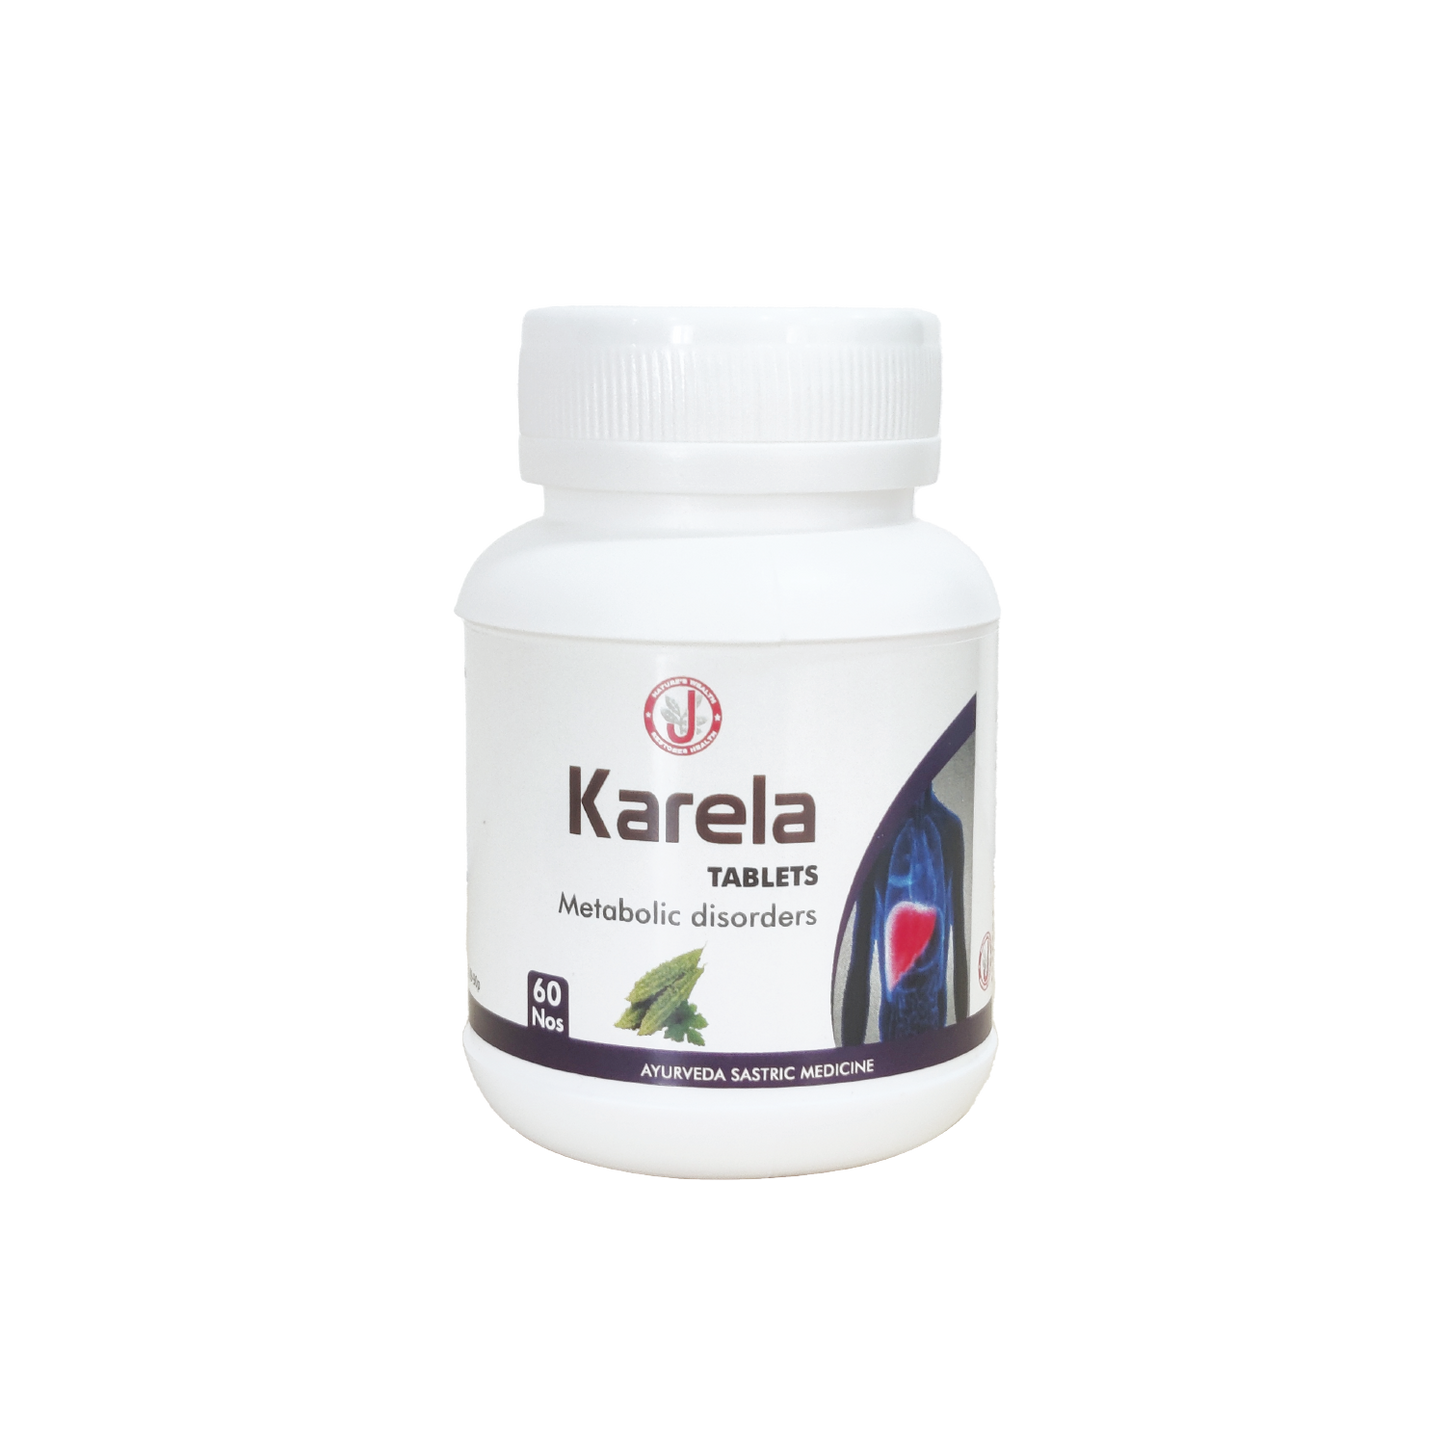 Dr. JRK's Karela Tablets 60 no's